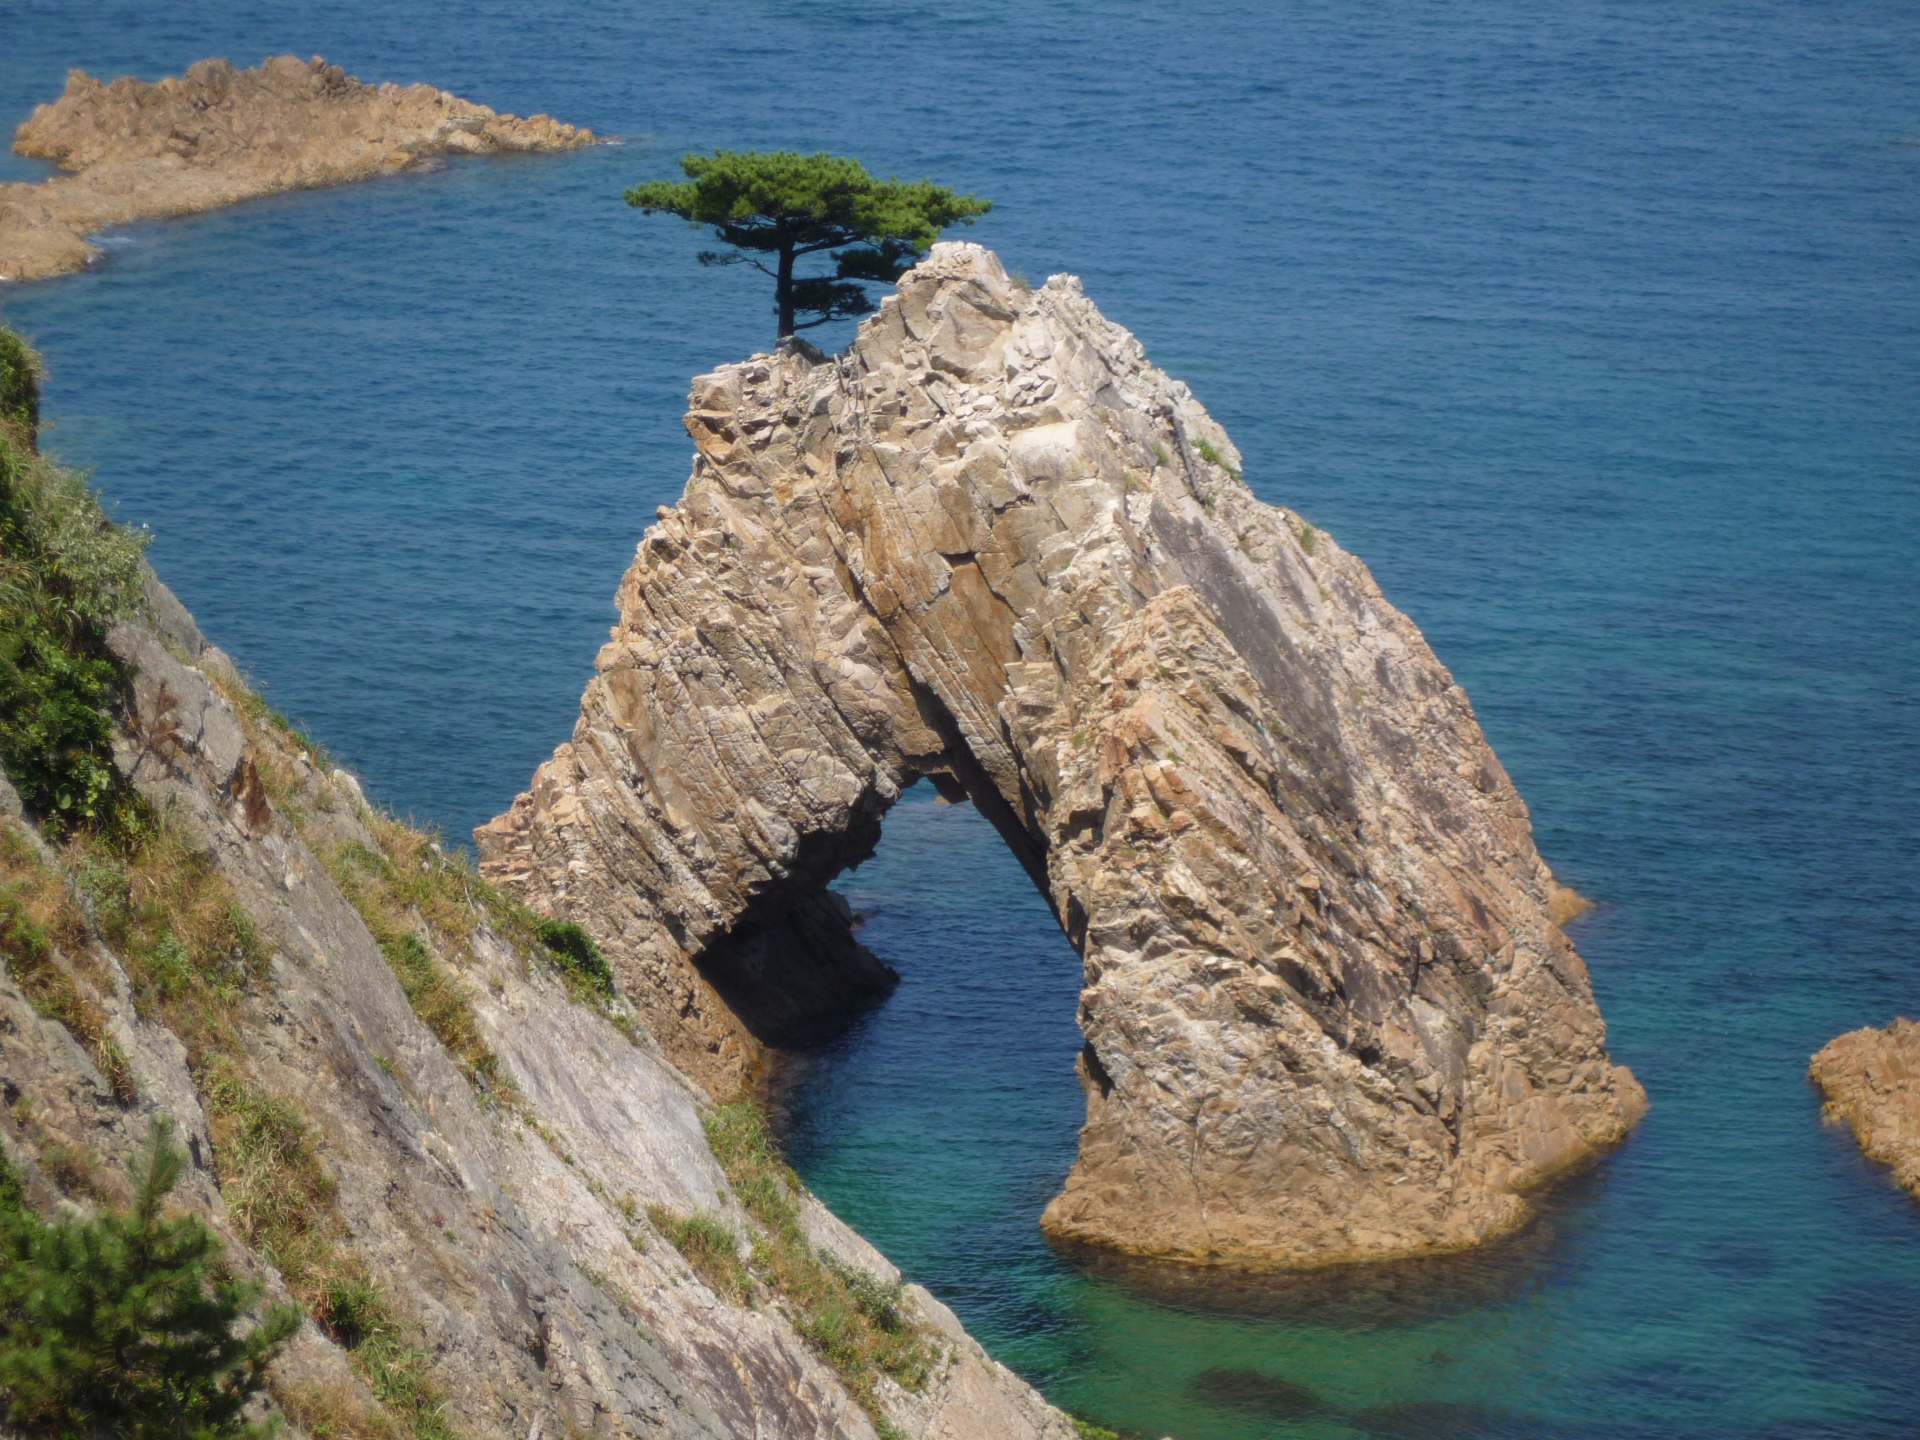 La grotte de 50 m de circonférence et de 10 m de haut est surmontée d'un joli pin. Sengan Matsushima est l'un des incroyables rochers de la côte d'Uradome.